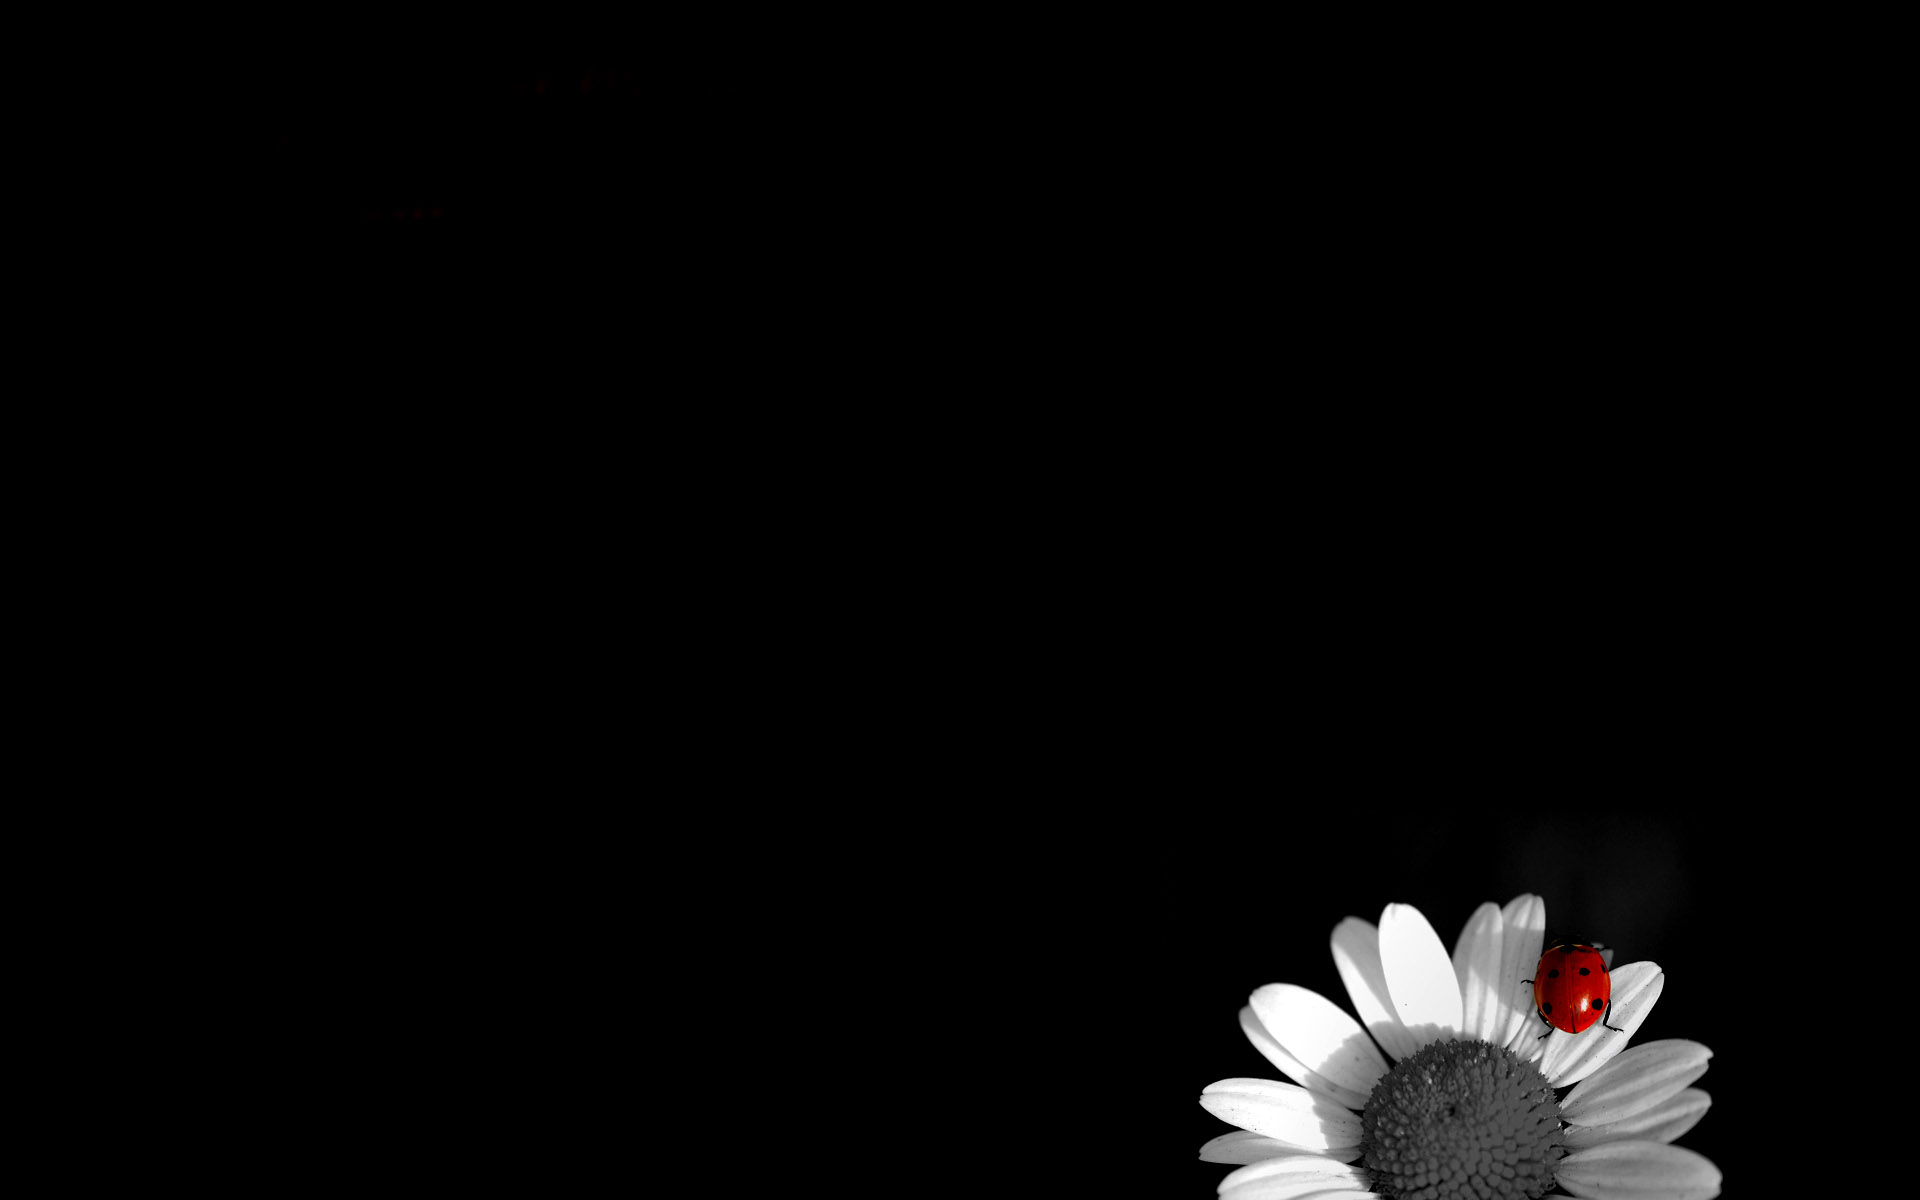 sfondo nero hd,nero,bianca,petalo,rosso,fotografia di still life